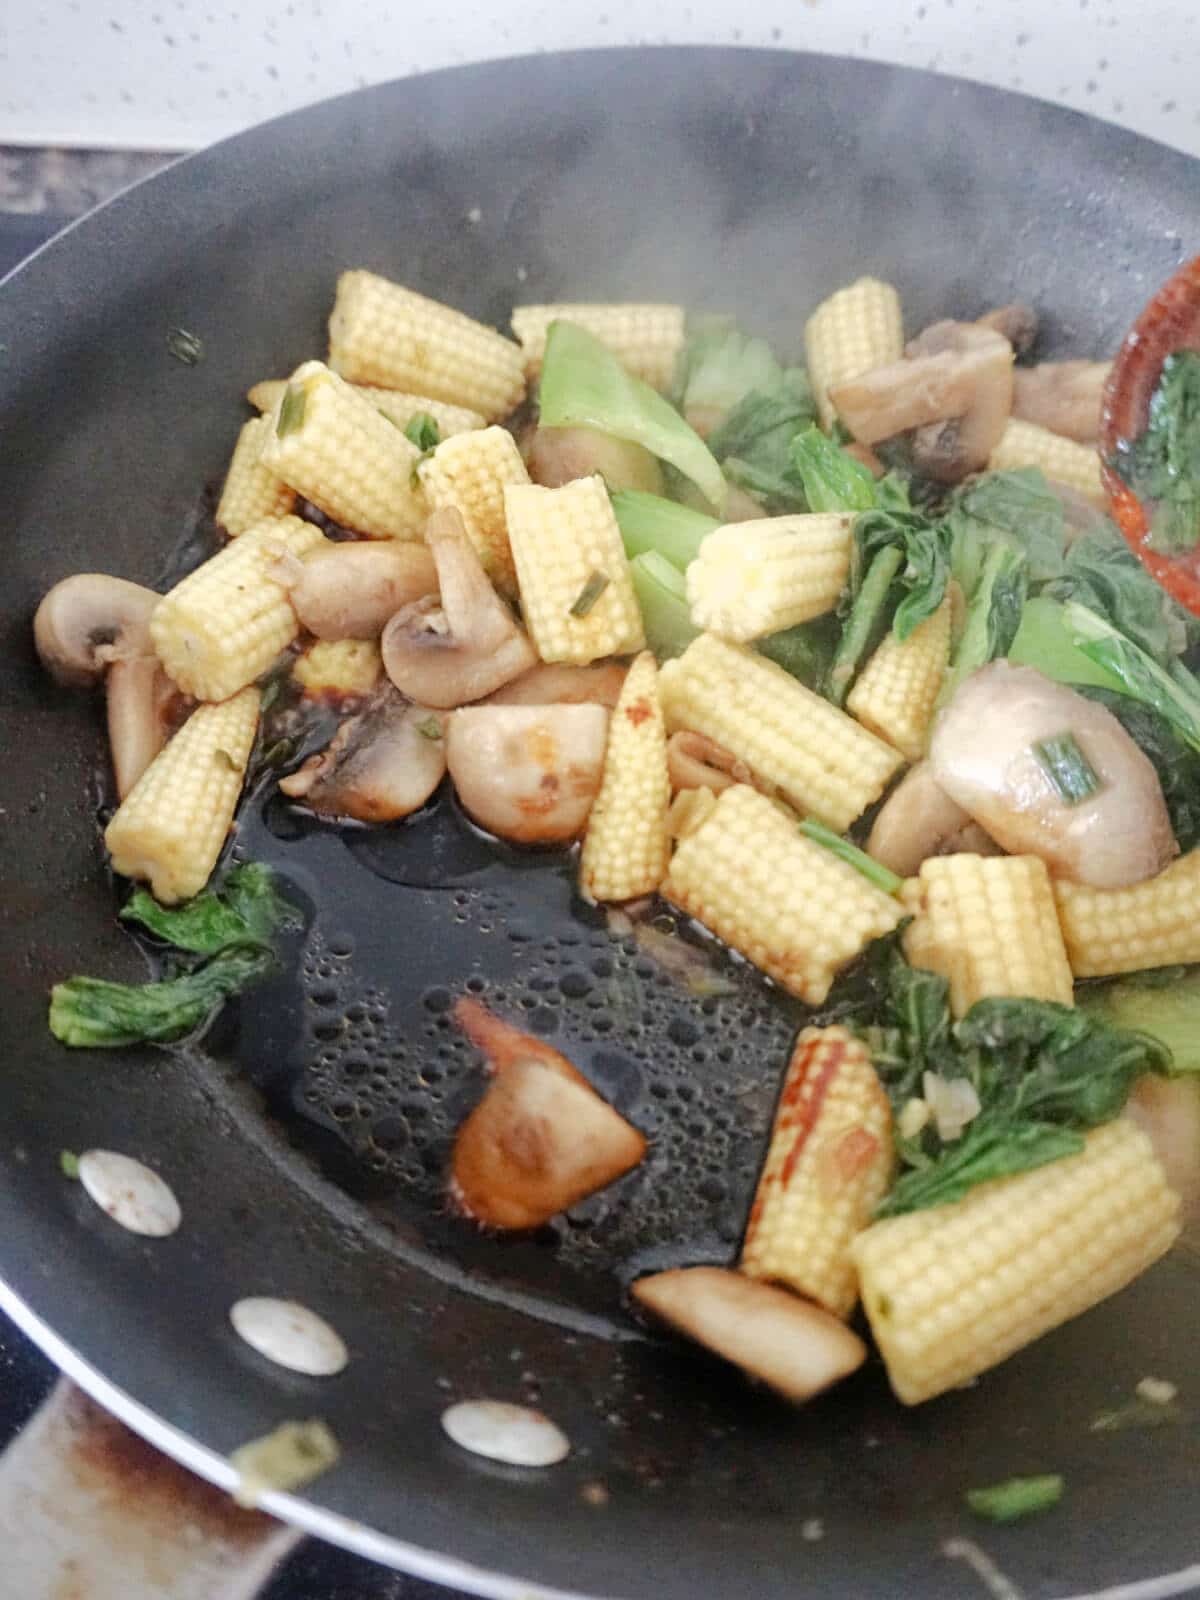 A pan with stir fry and sauce